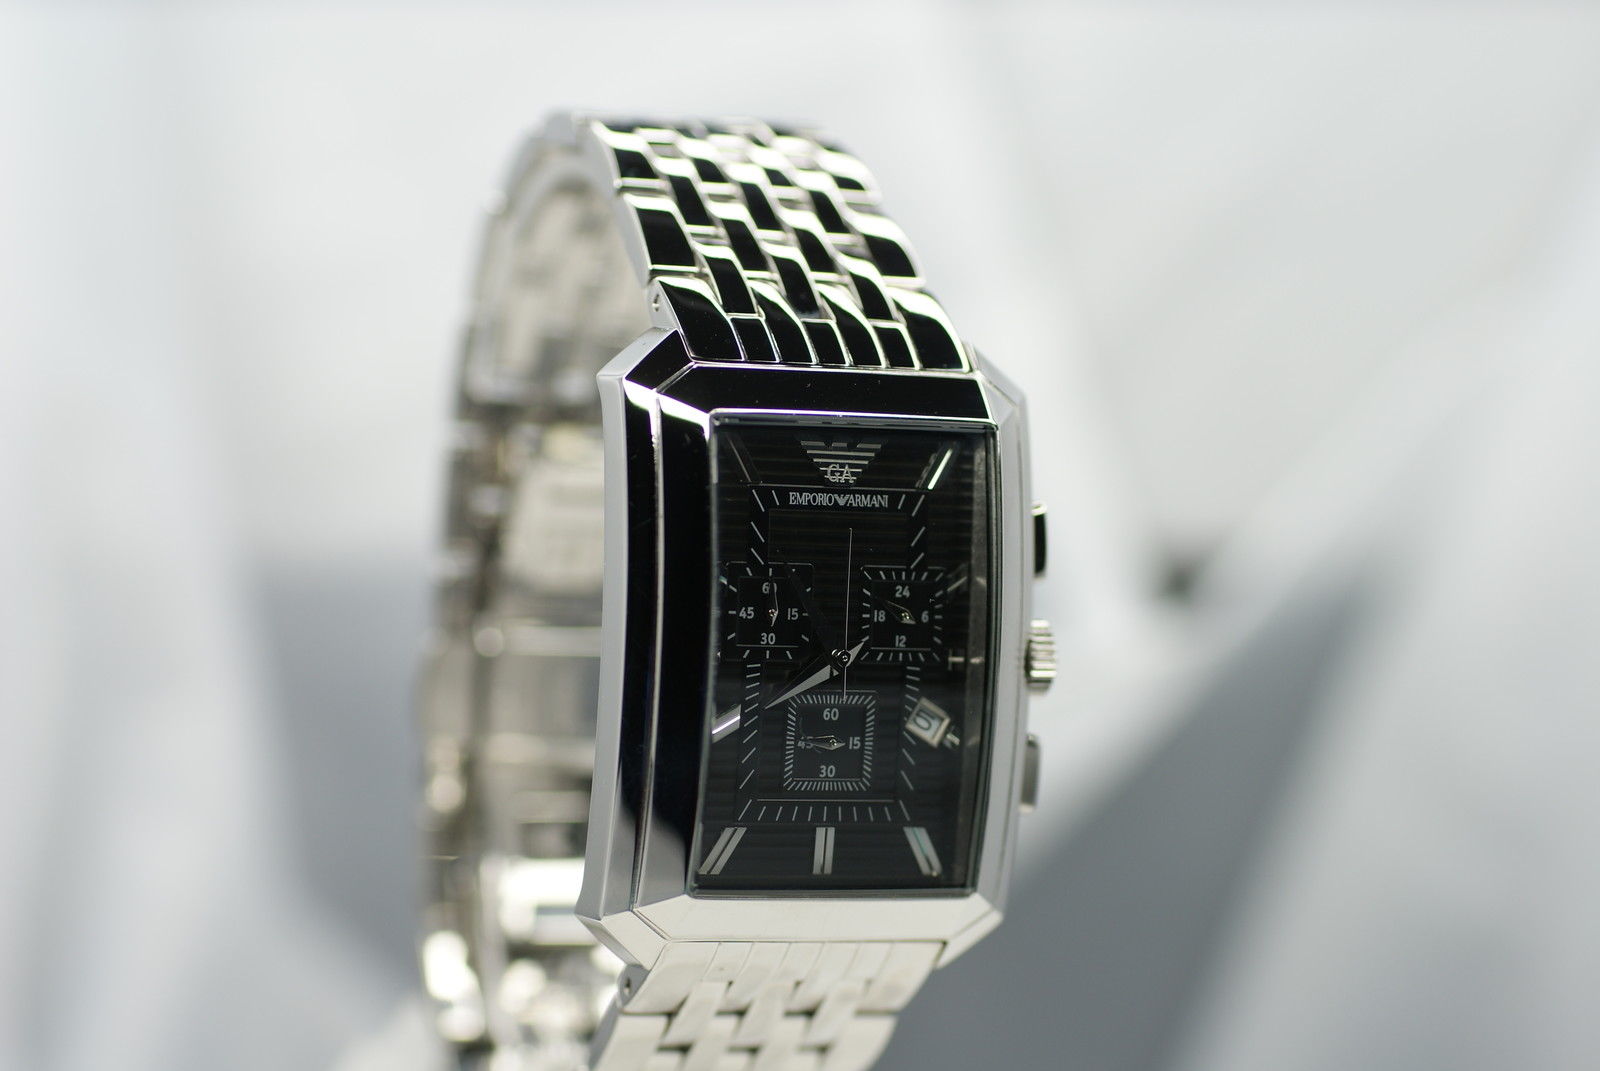 Les montres Armani les plus chères vendues sur eBay !